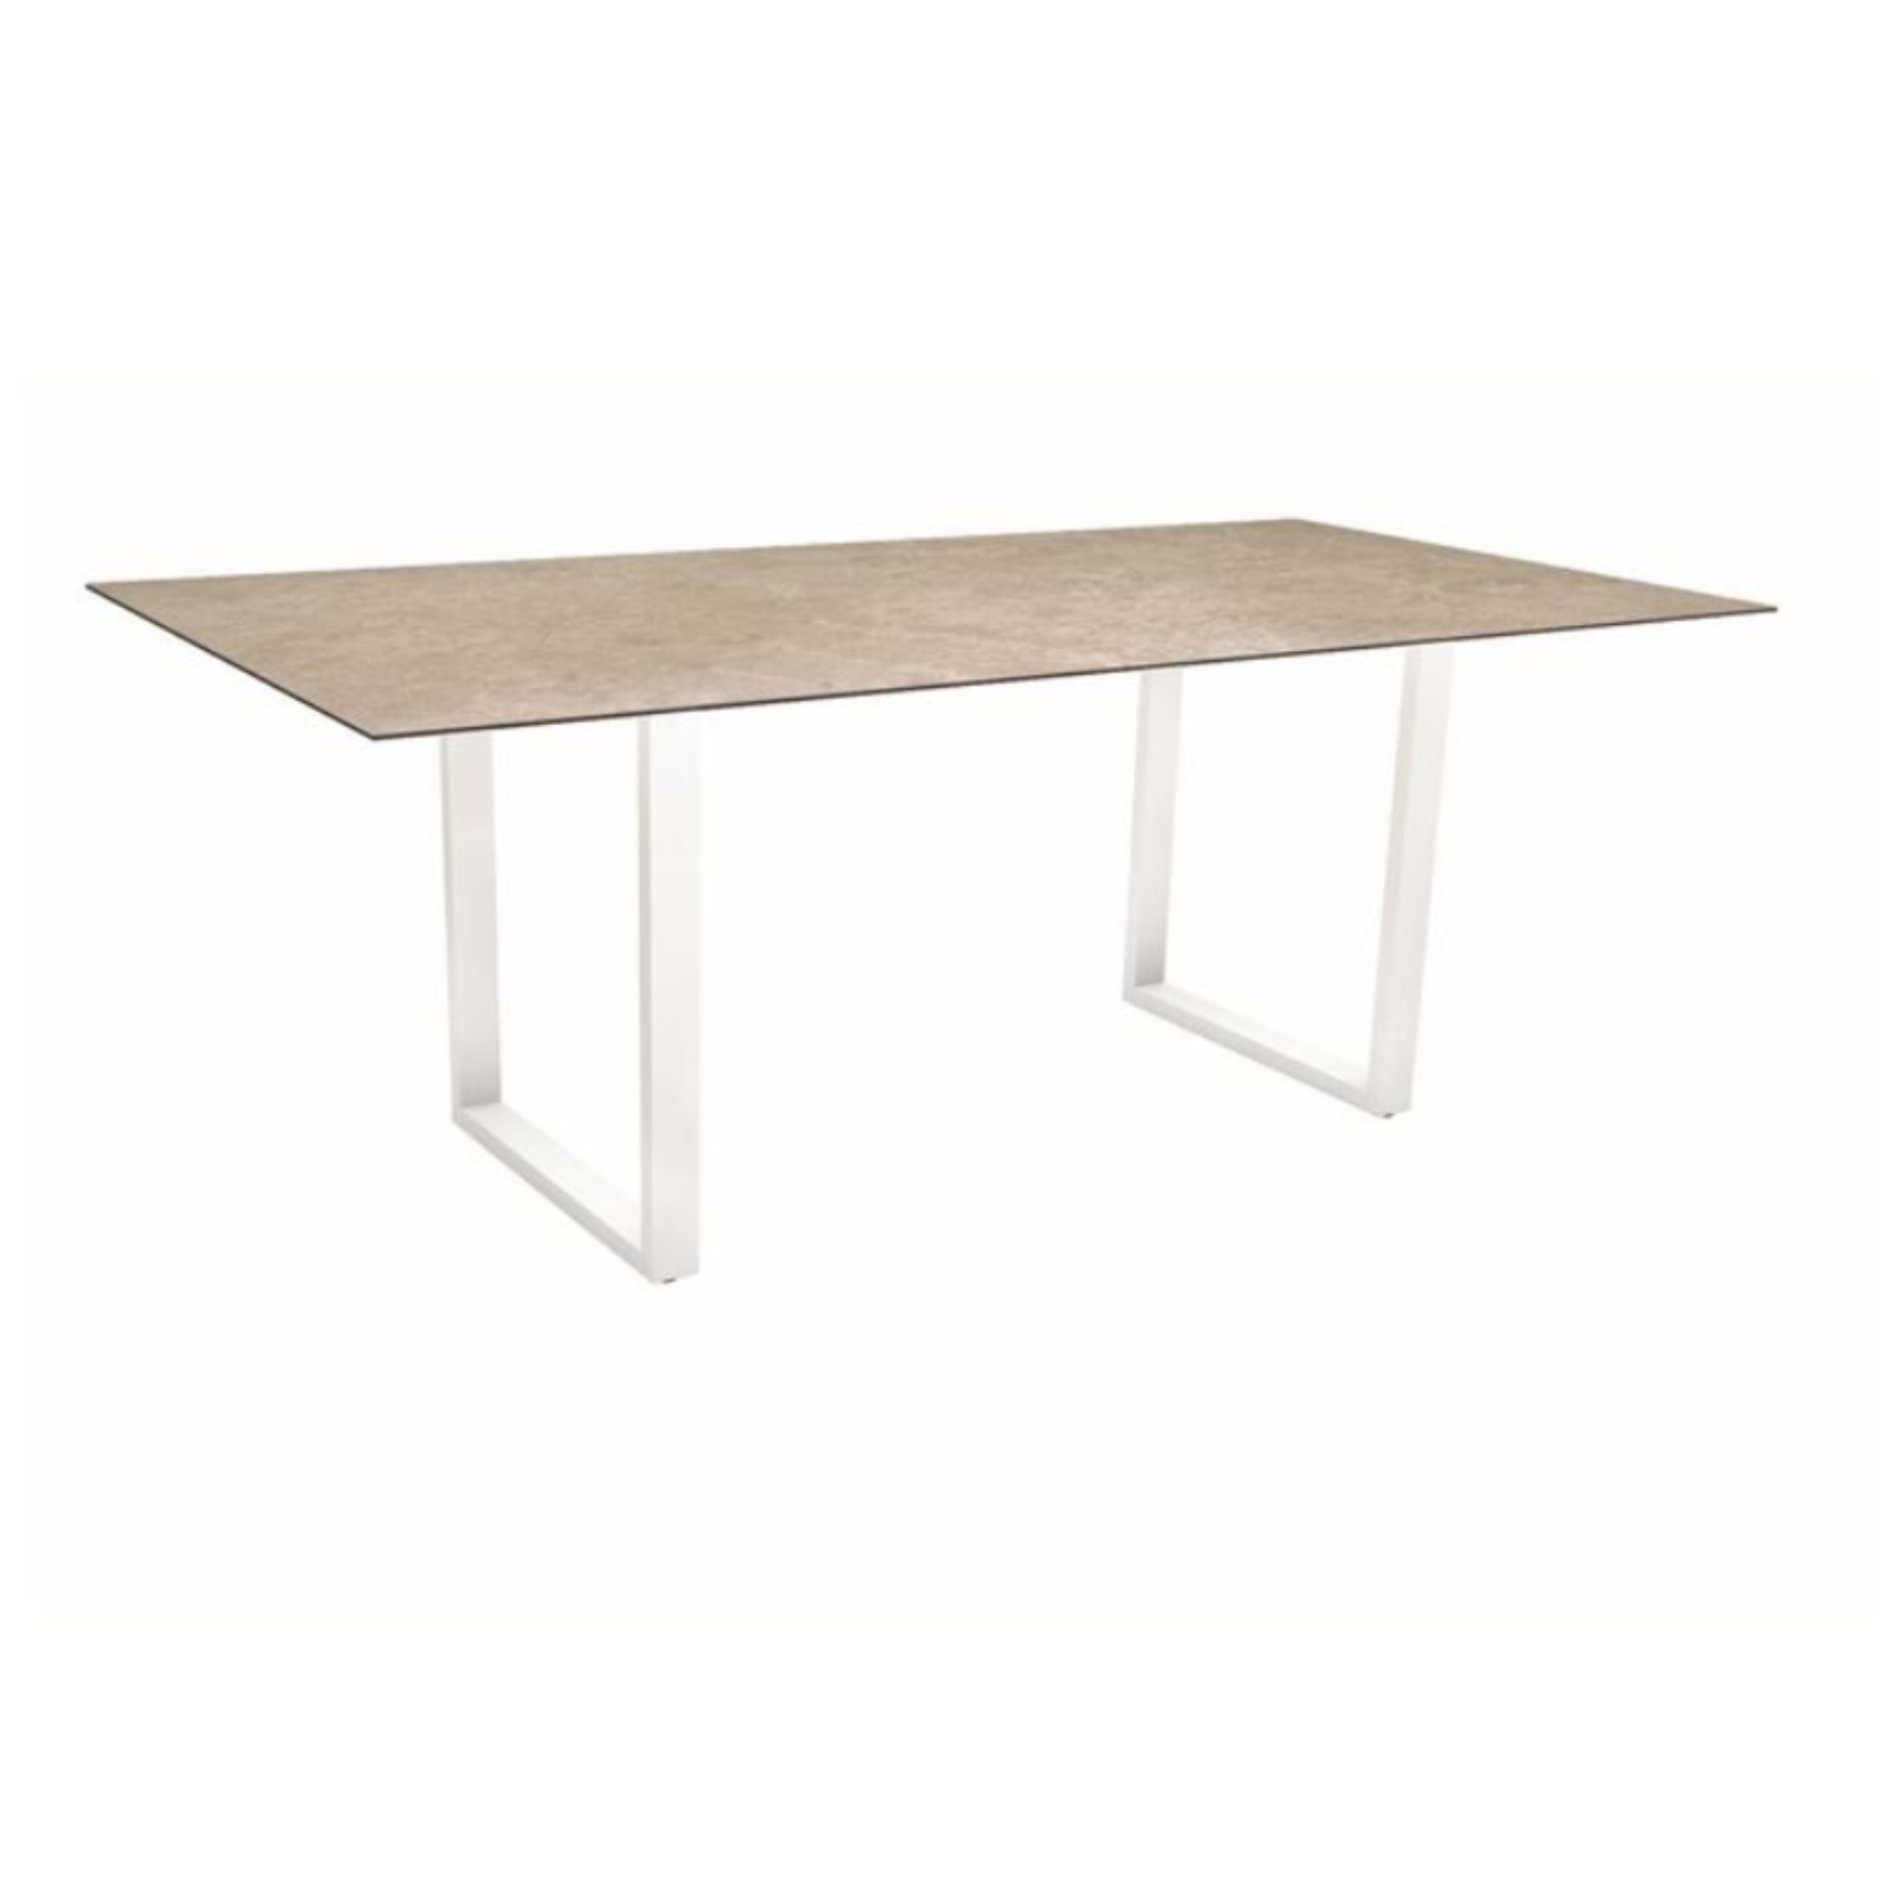 Stern Kufentisch, Maße: 200x100x73 cm, Gestell Aluminium weiß, Tischplatte HPL Vintage Shell